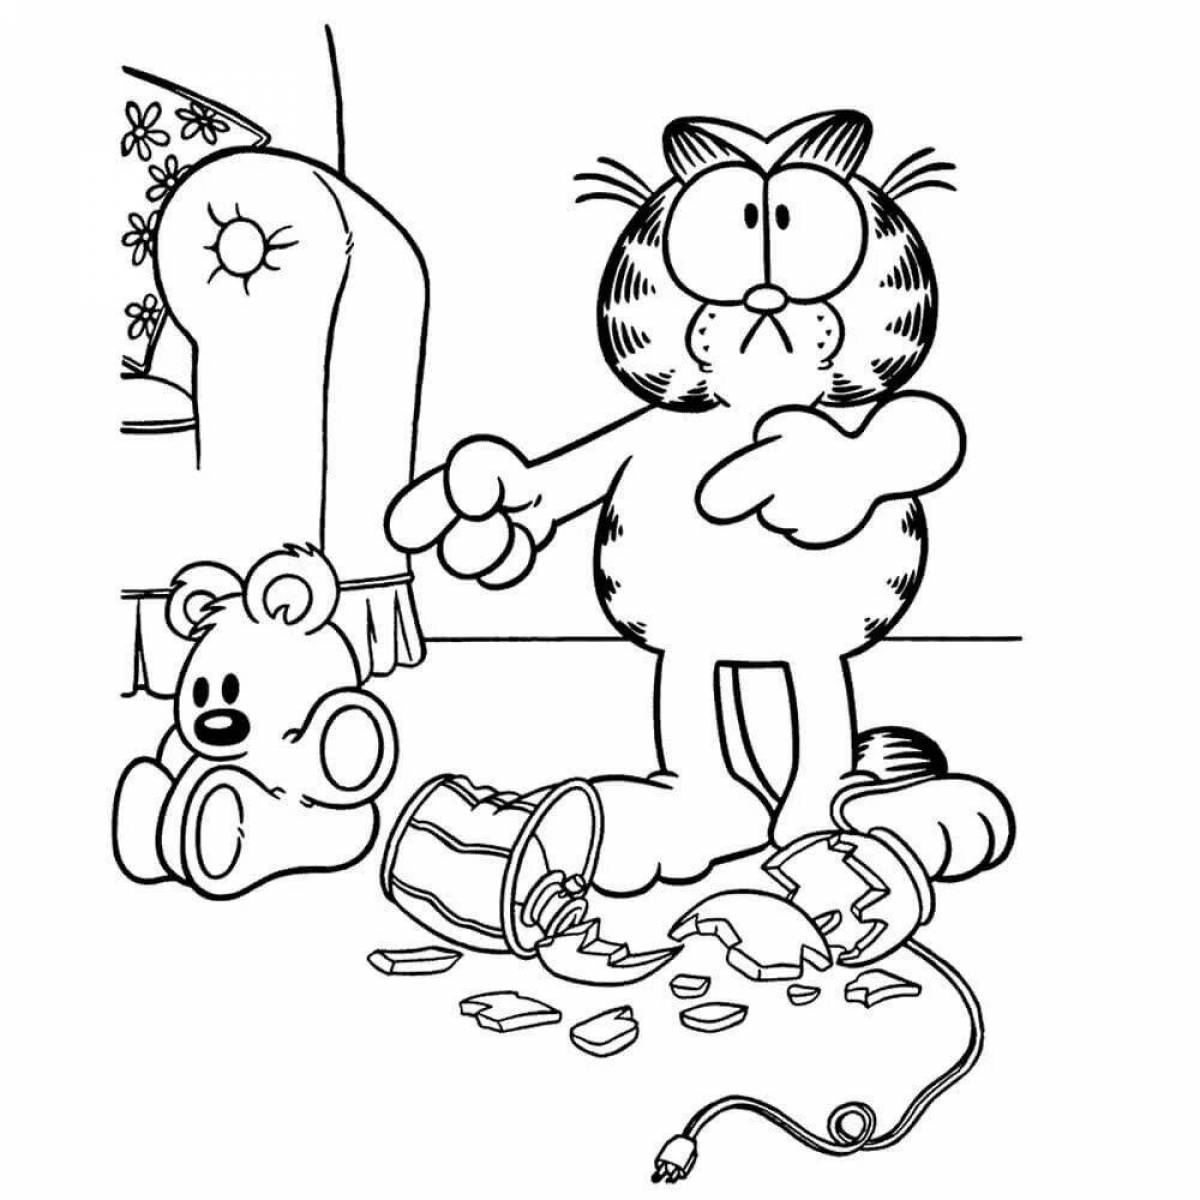 Grand Garfield cat coloring book